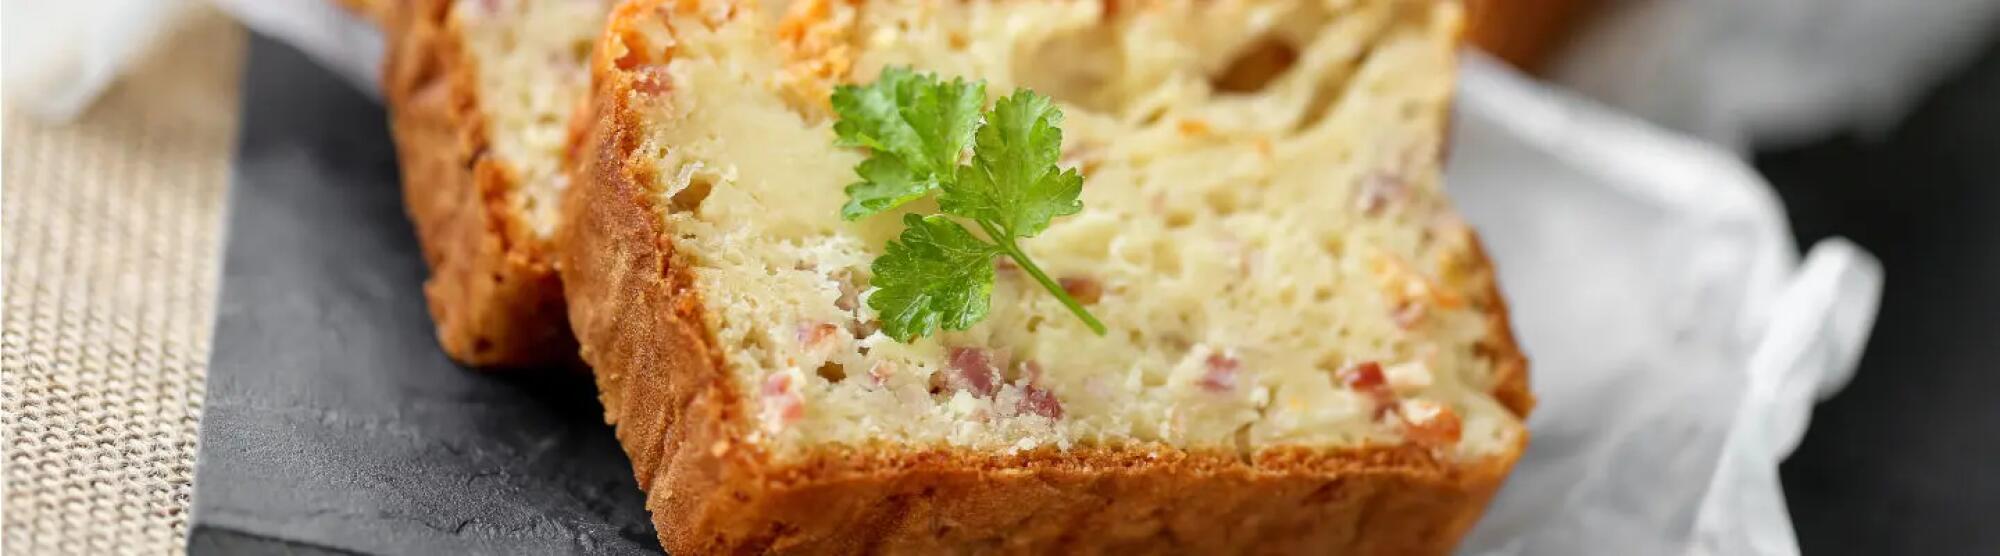 Recette : Cake au fromage à raclette, oignons grillés et bacon